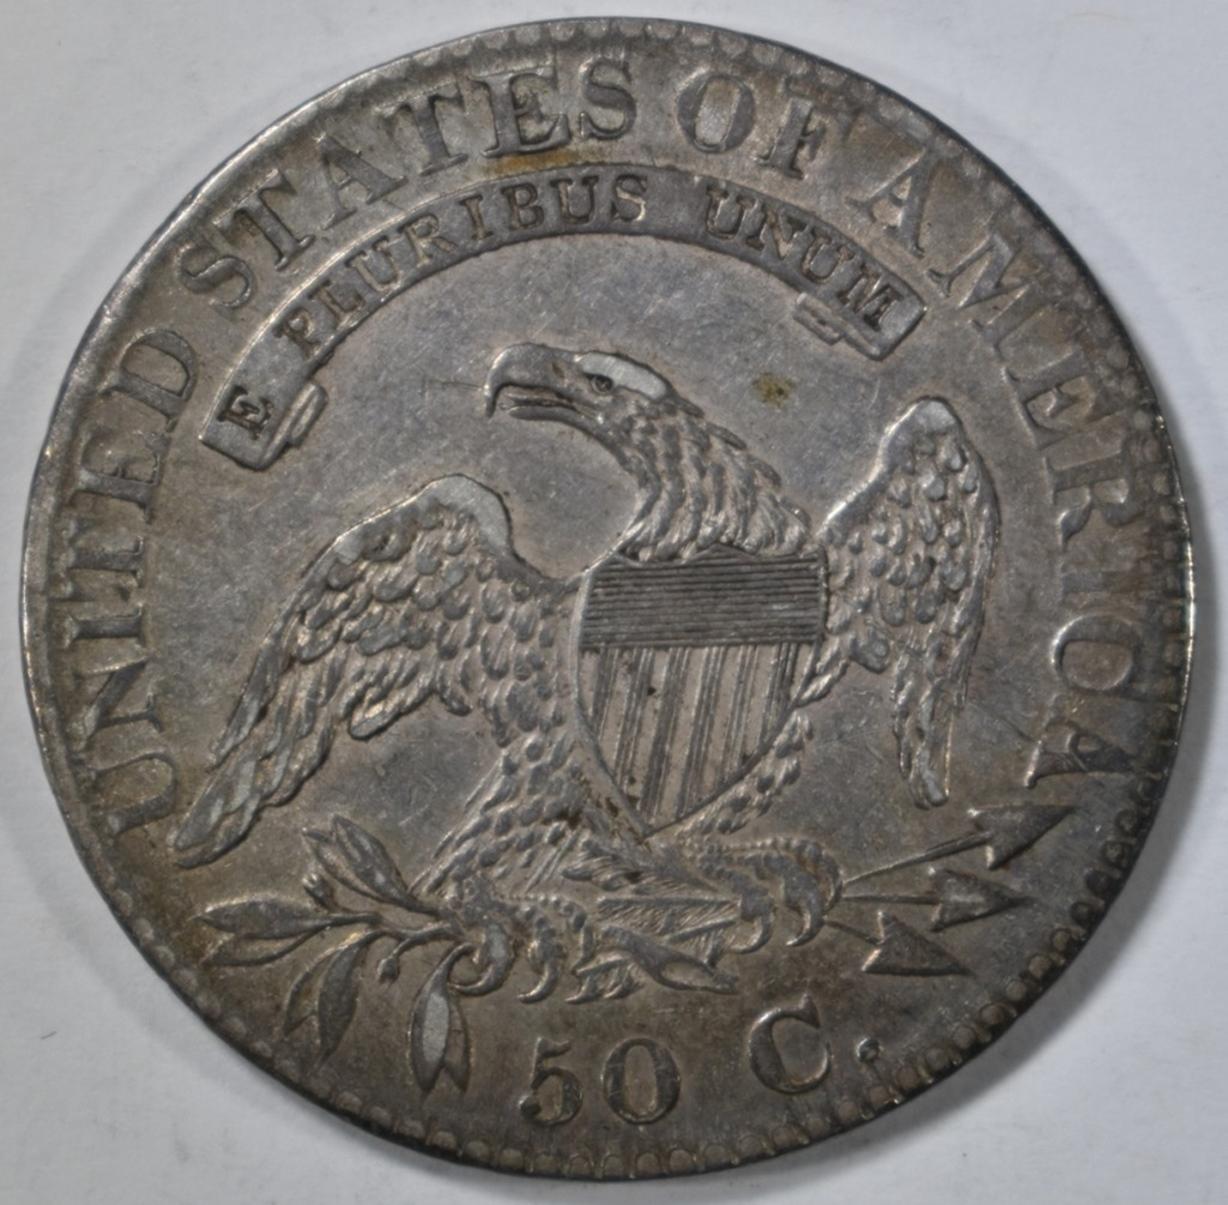 1824 BUST HALF DOLLAR  ORIG AU